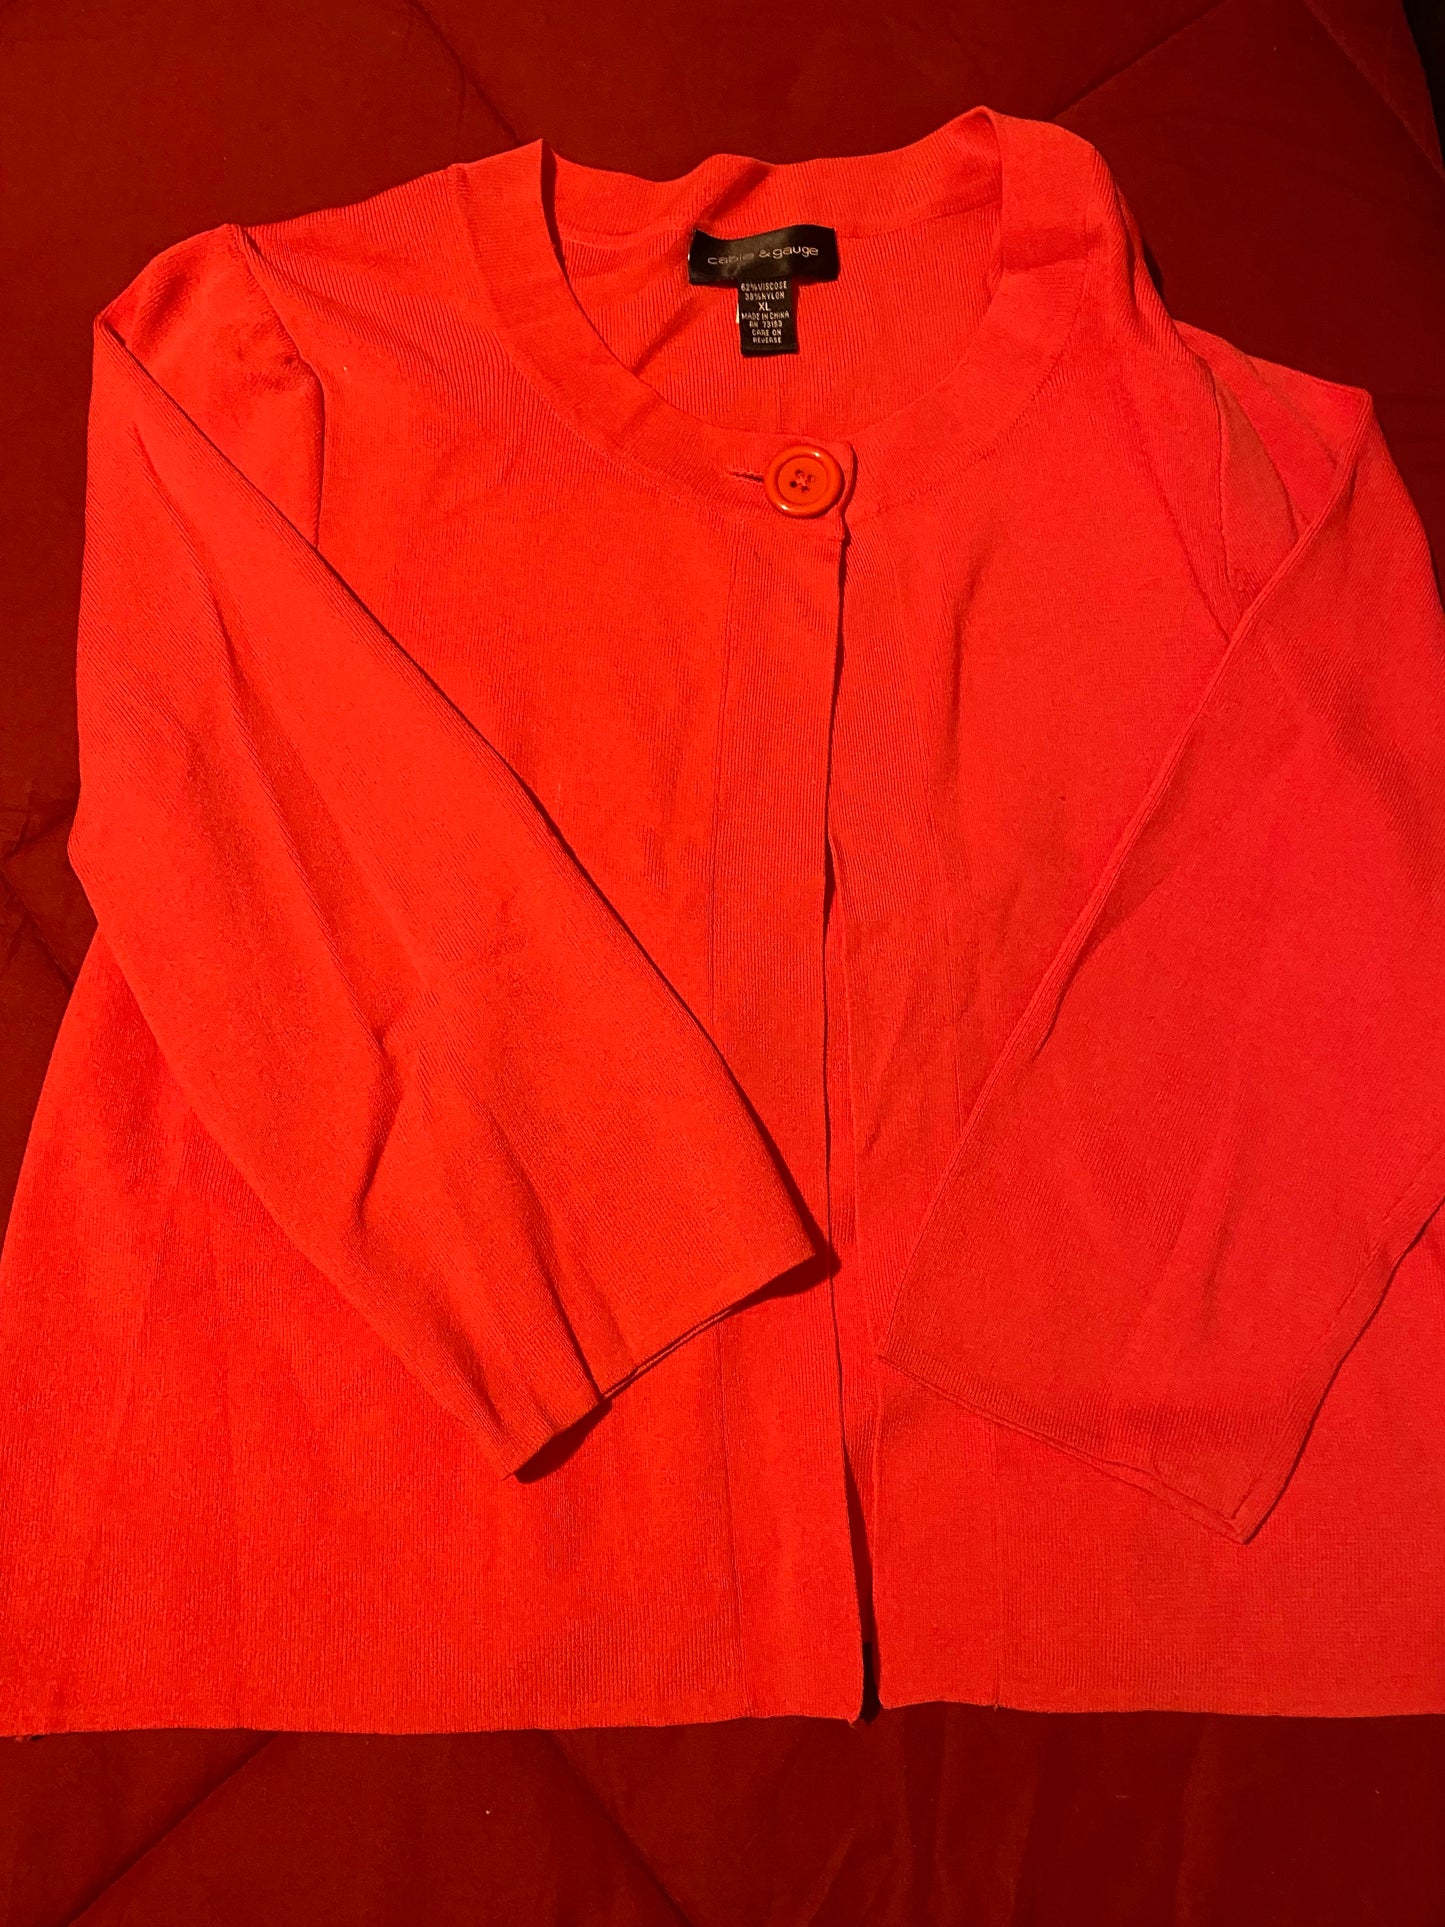 Cable & Gauge XL Short Shoulder Sweater 62% Viscose, 38% Nylon Orange/Red NWOT